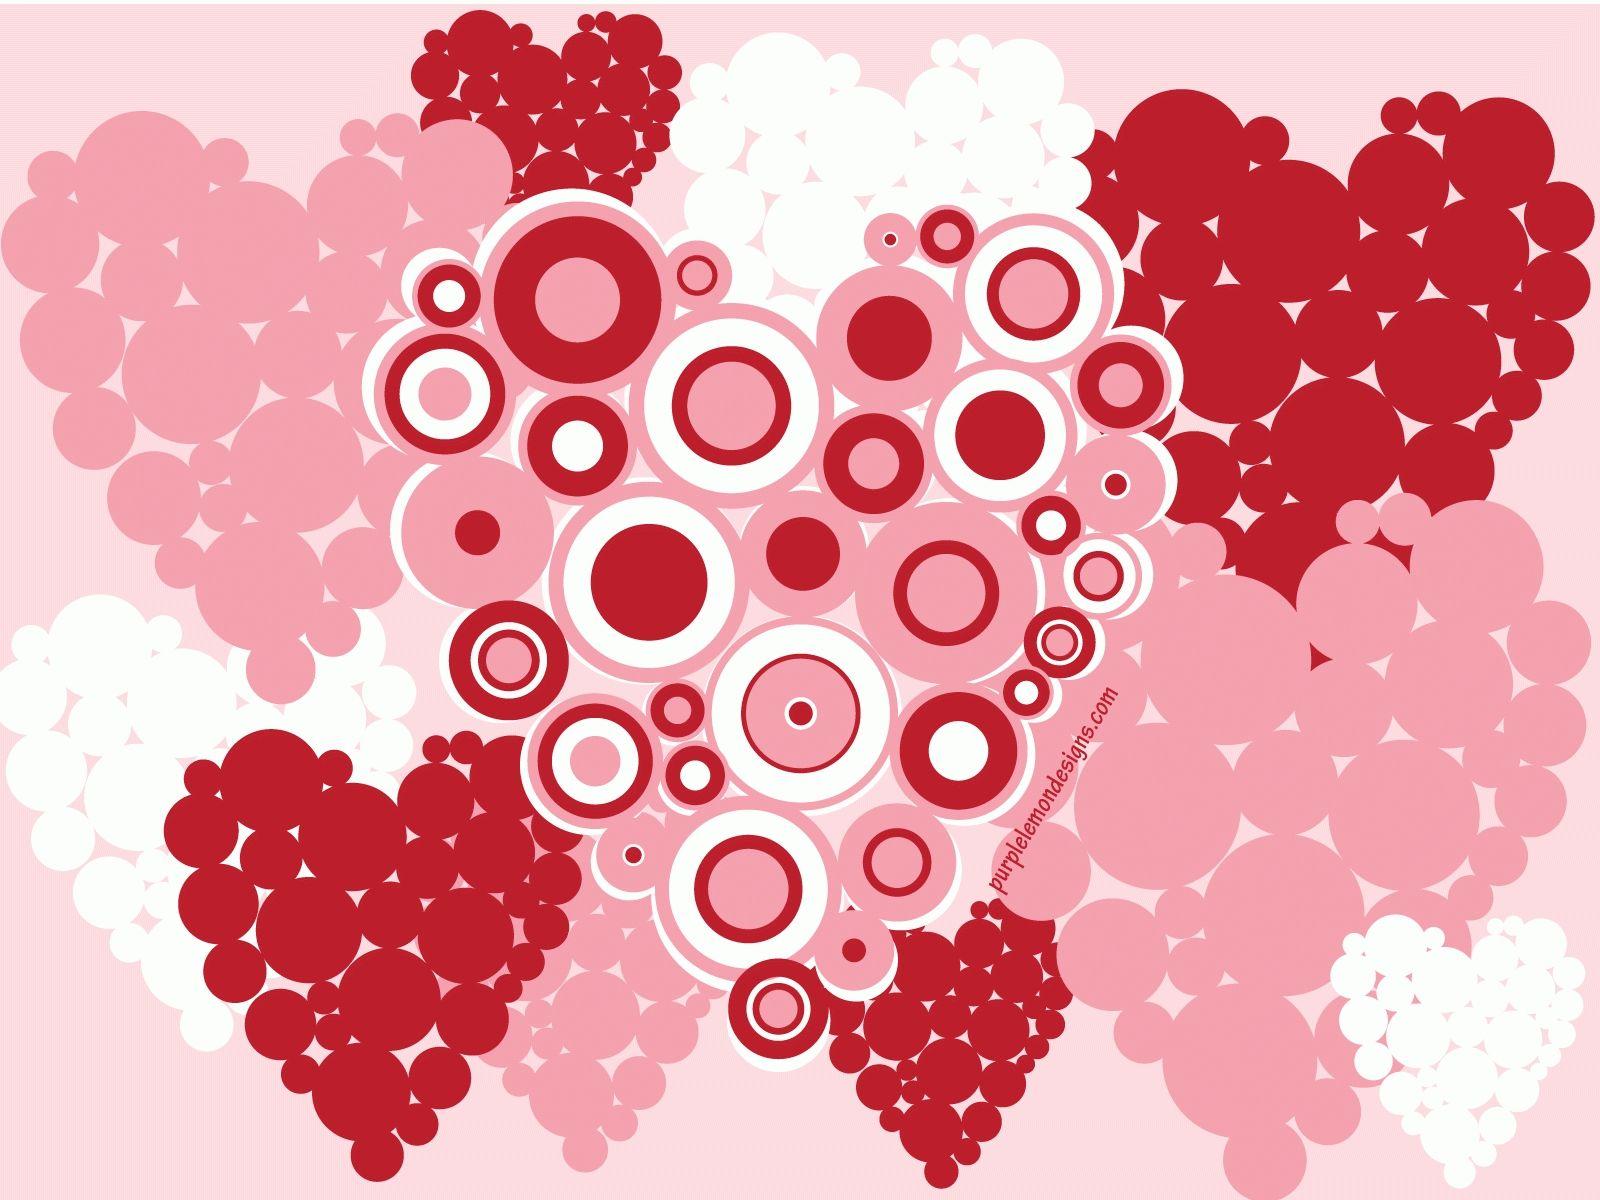 Best Valentine Wallpaper For Desktop FULL HD 1080p For PC Background. Valentines wallpaper, Free valentine wallpaper, Valentine background